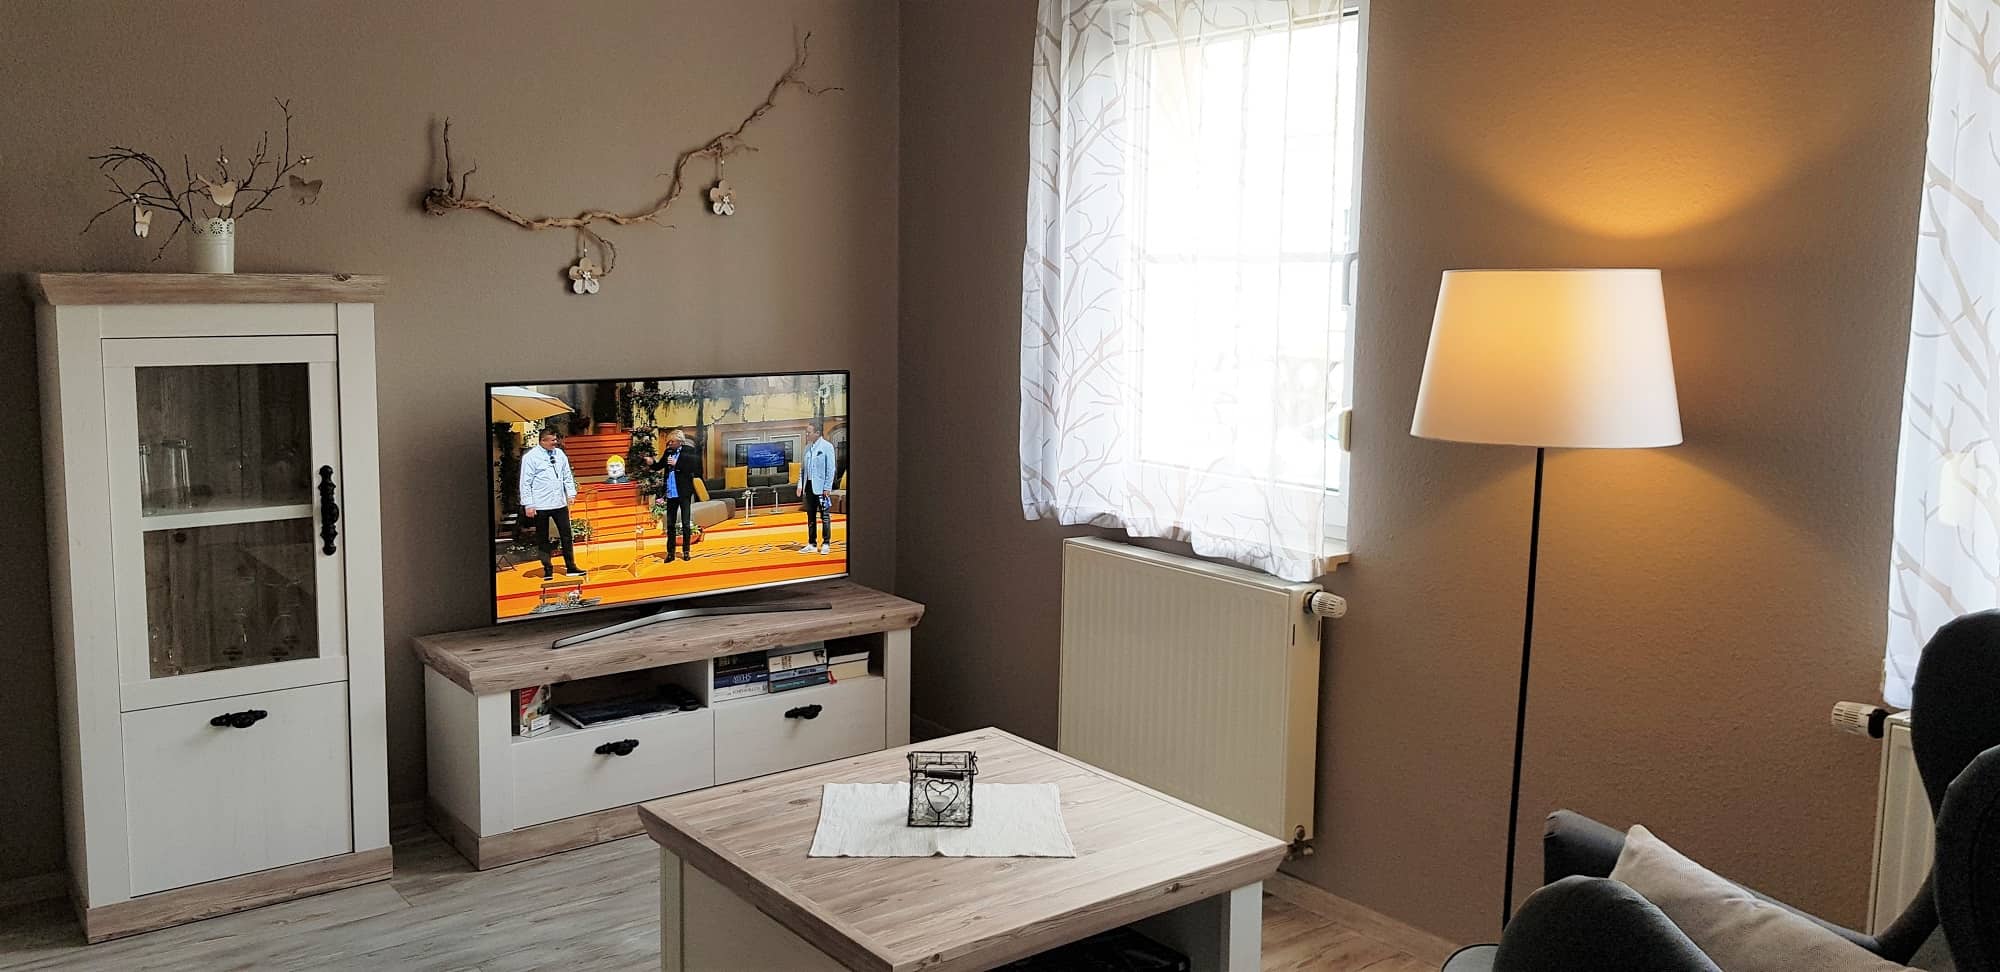 Fernseher-auf-Lowboard-neben-Schrank-und-Tisch-in-gleichem-Design